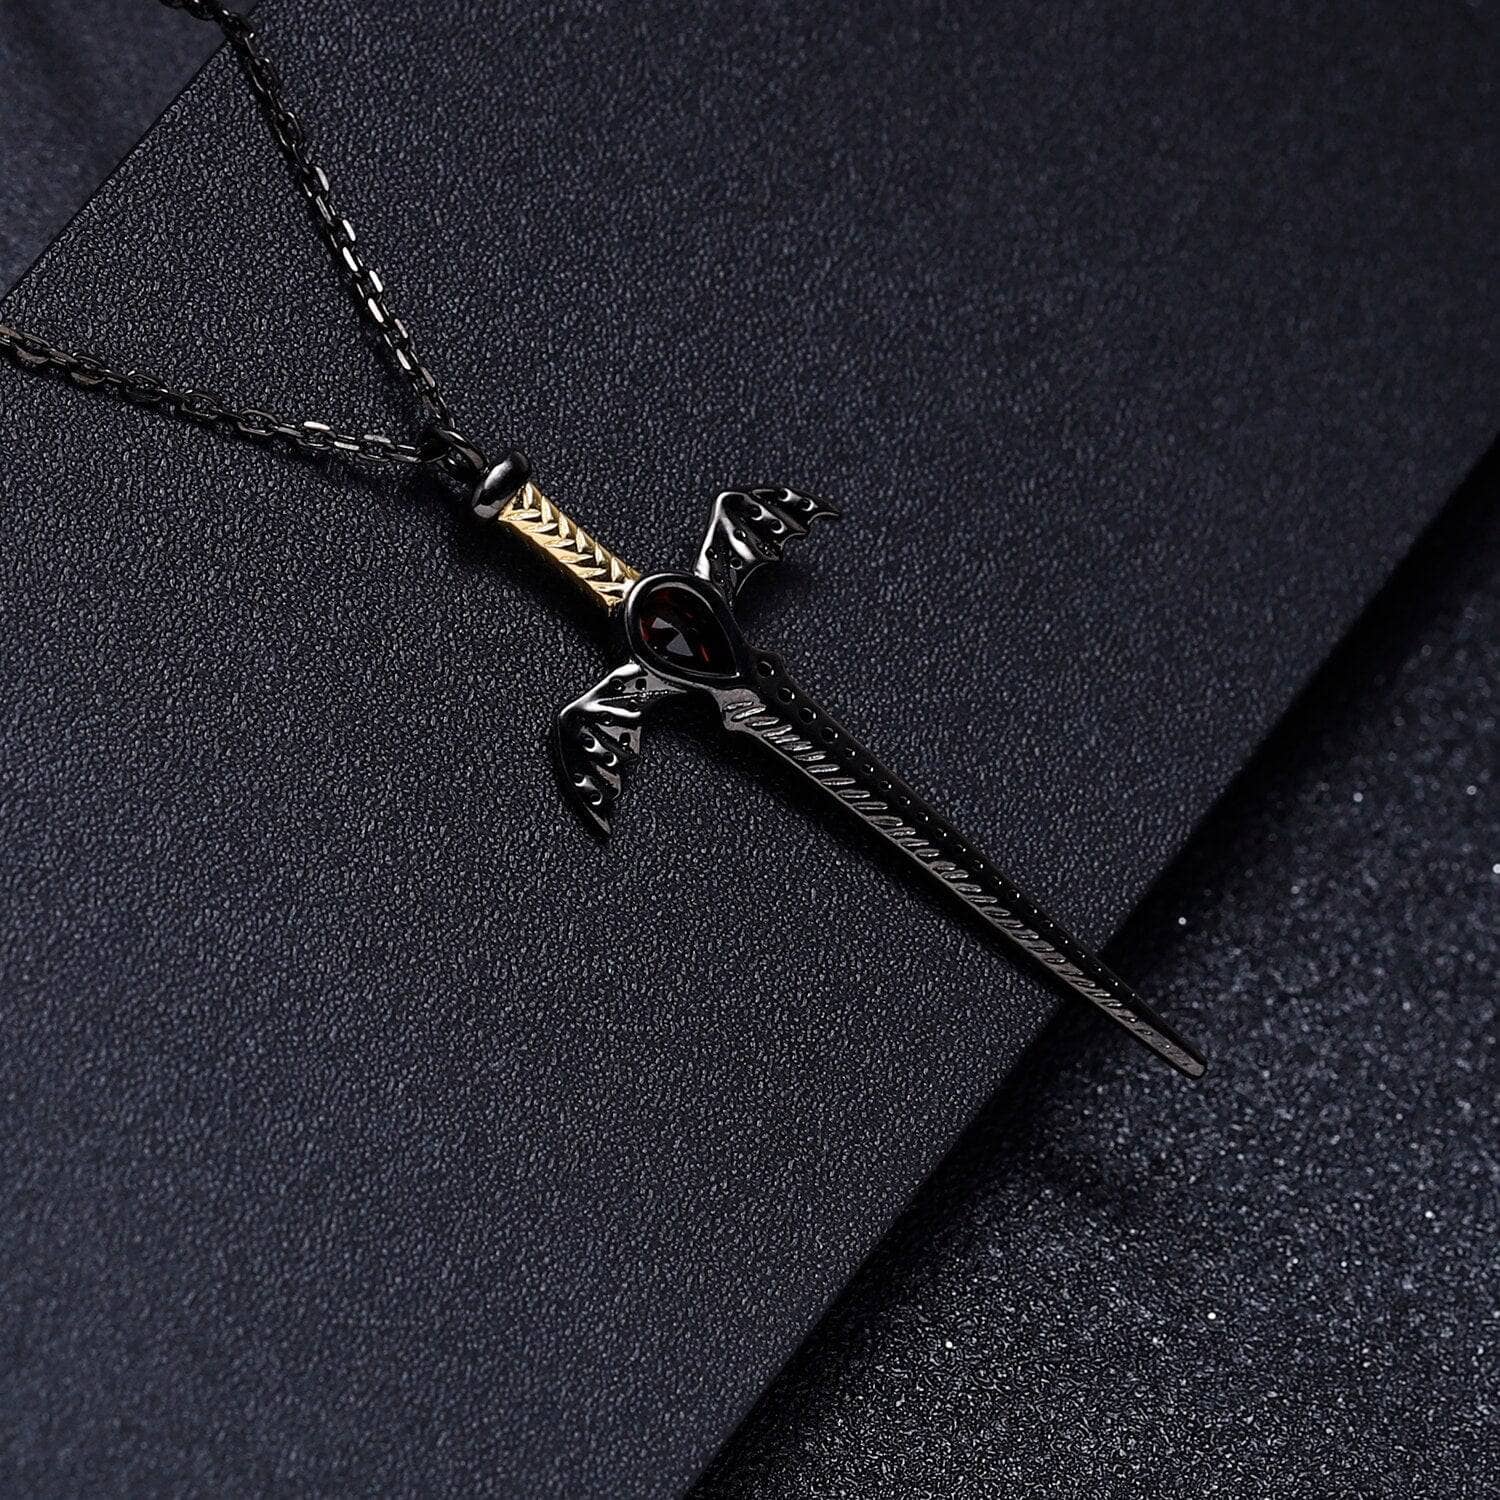 Natural Garnet Bat's Wings Sword Vintage Necklace